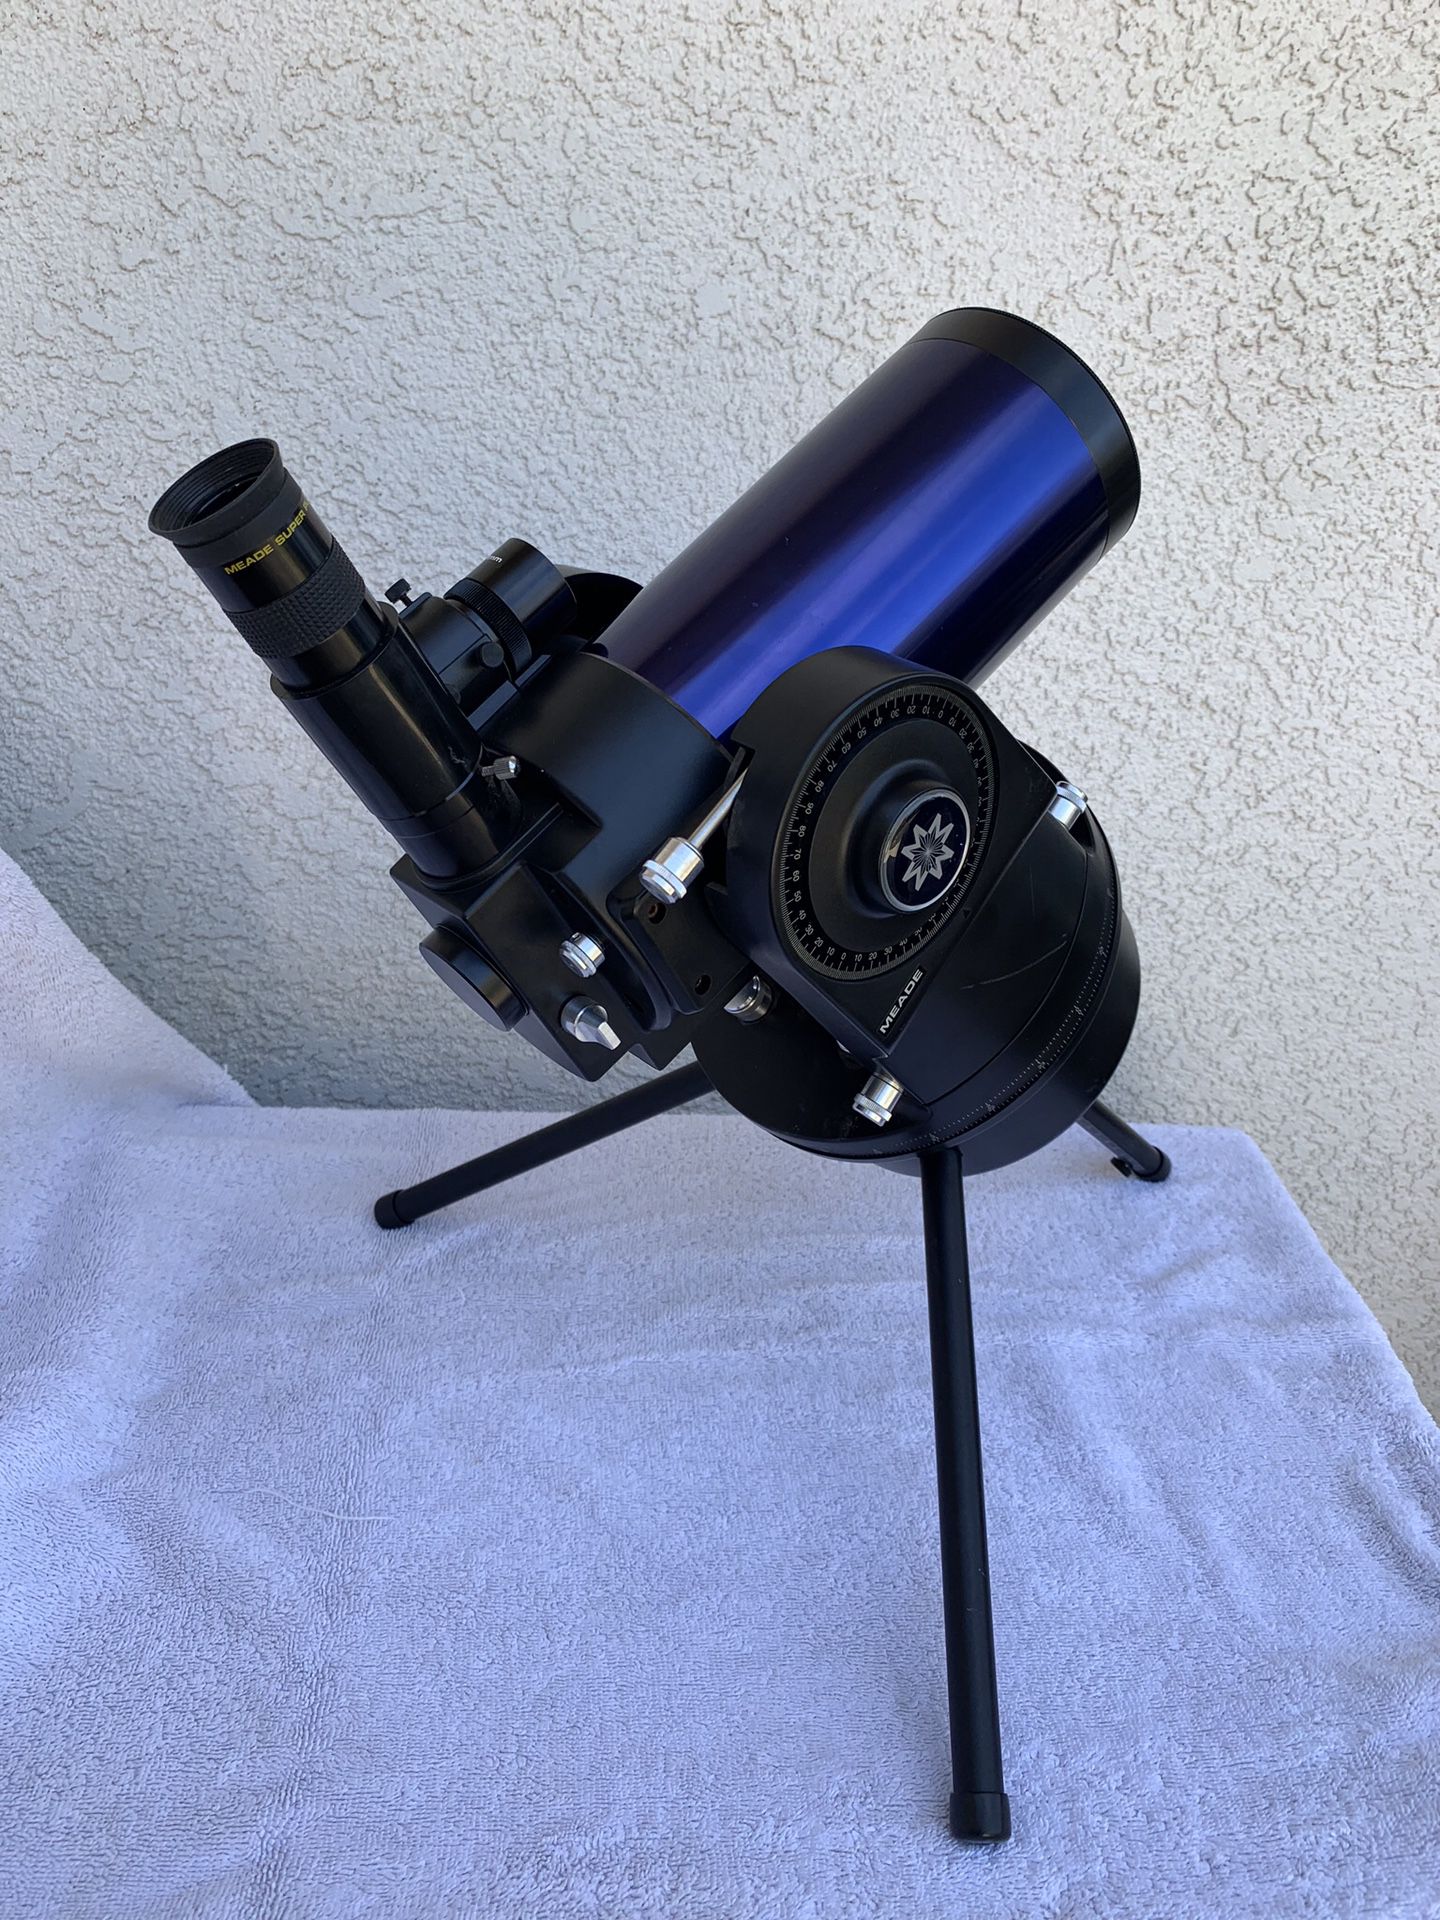 Meade ETX 90 4” Telescope